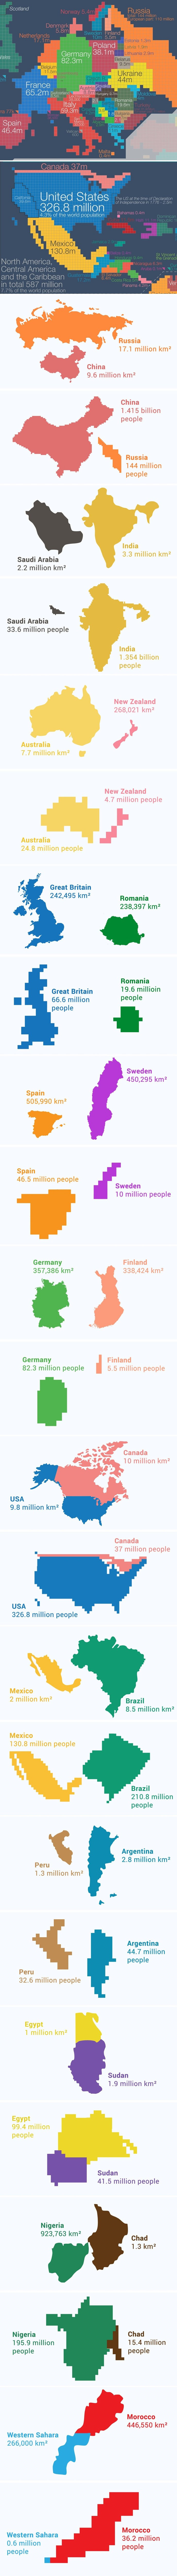 Zanimljivo je vidjeti kako države izgledaju kad ih prikažemo prema broju stanovnika